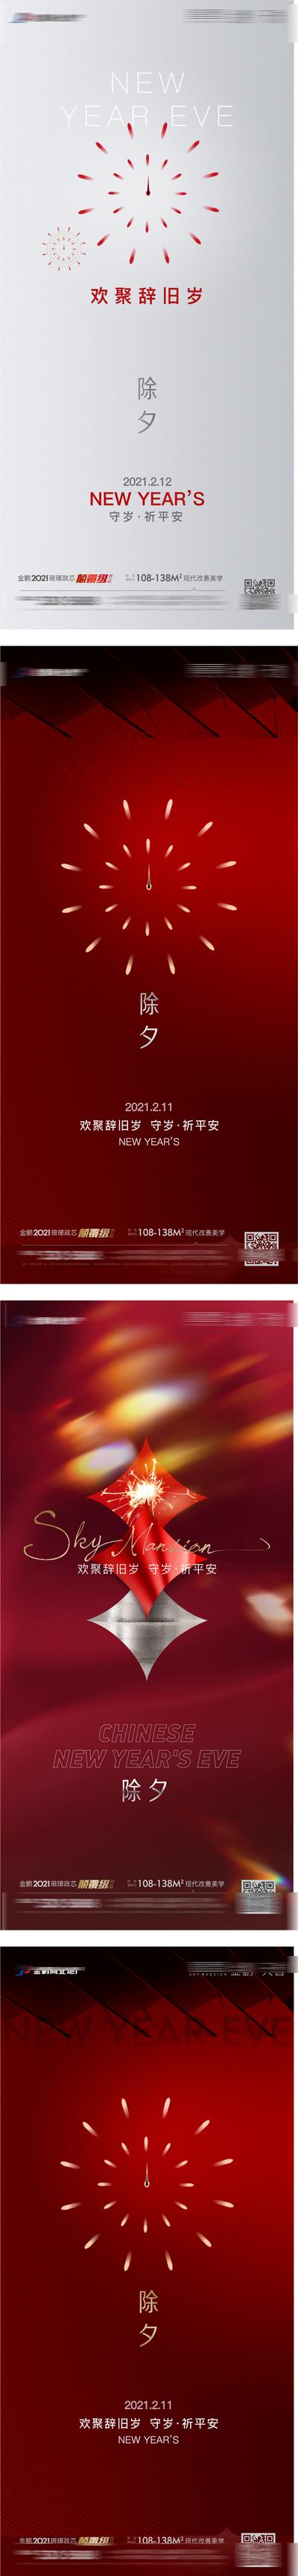 南门网 海报 房地产 中国传统节日 新年 除夕 初一 初二 除夕 